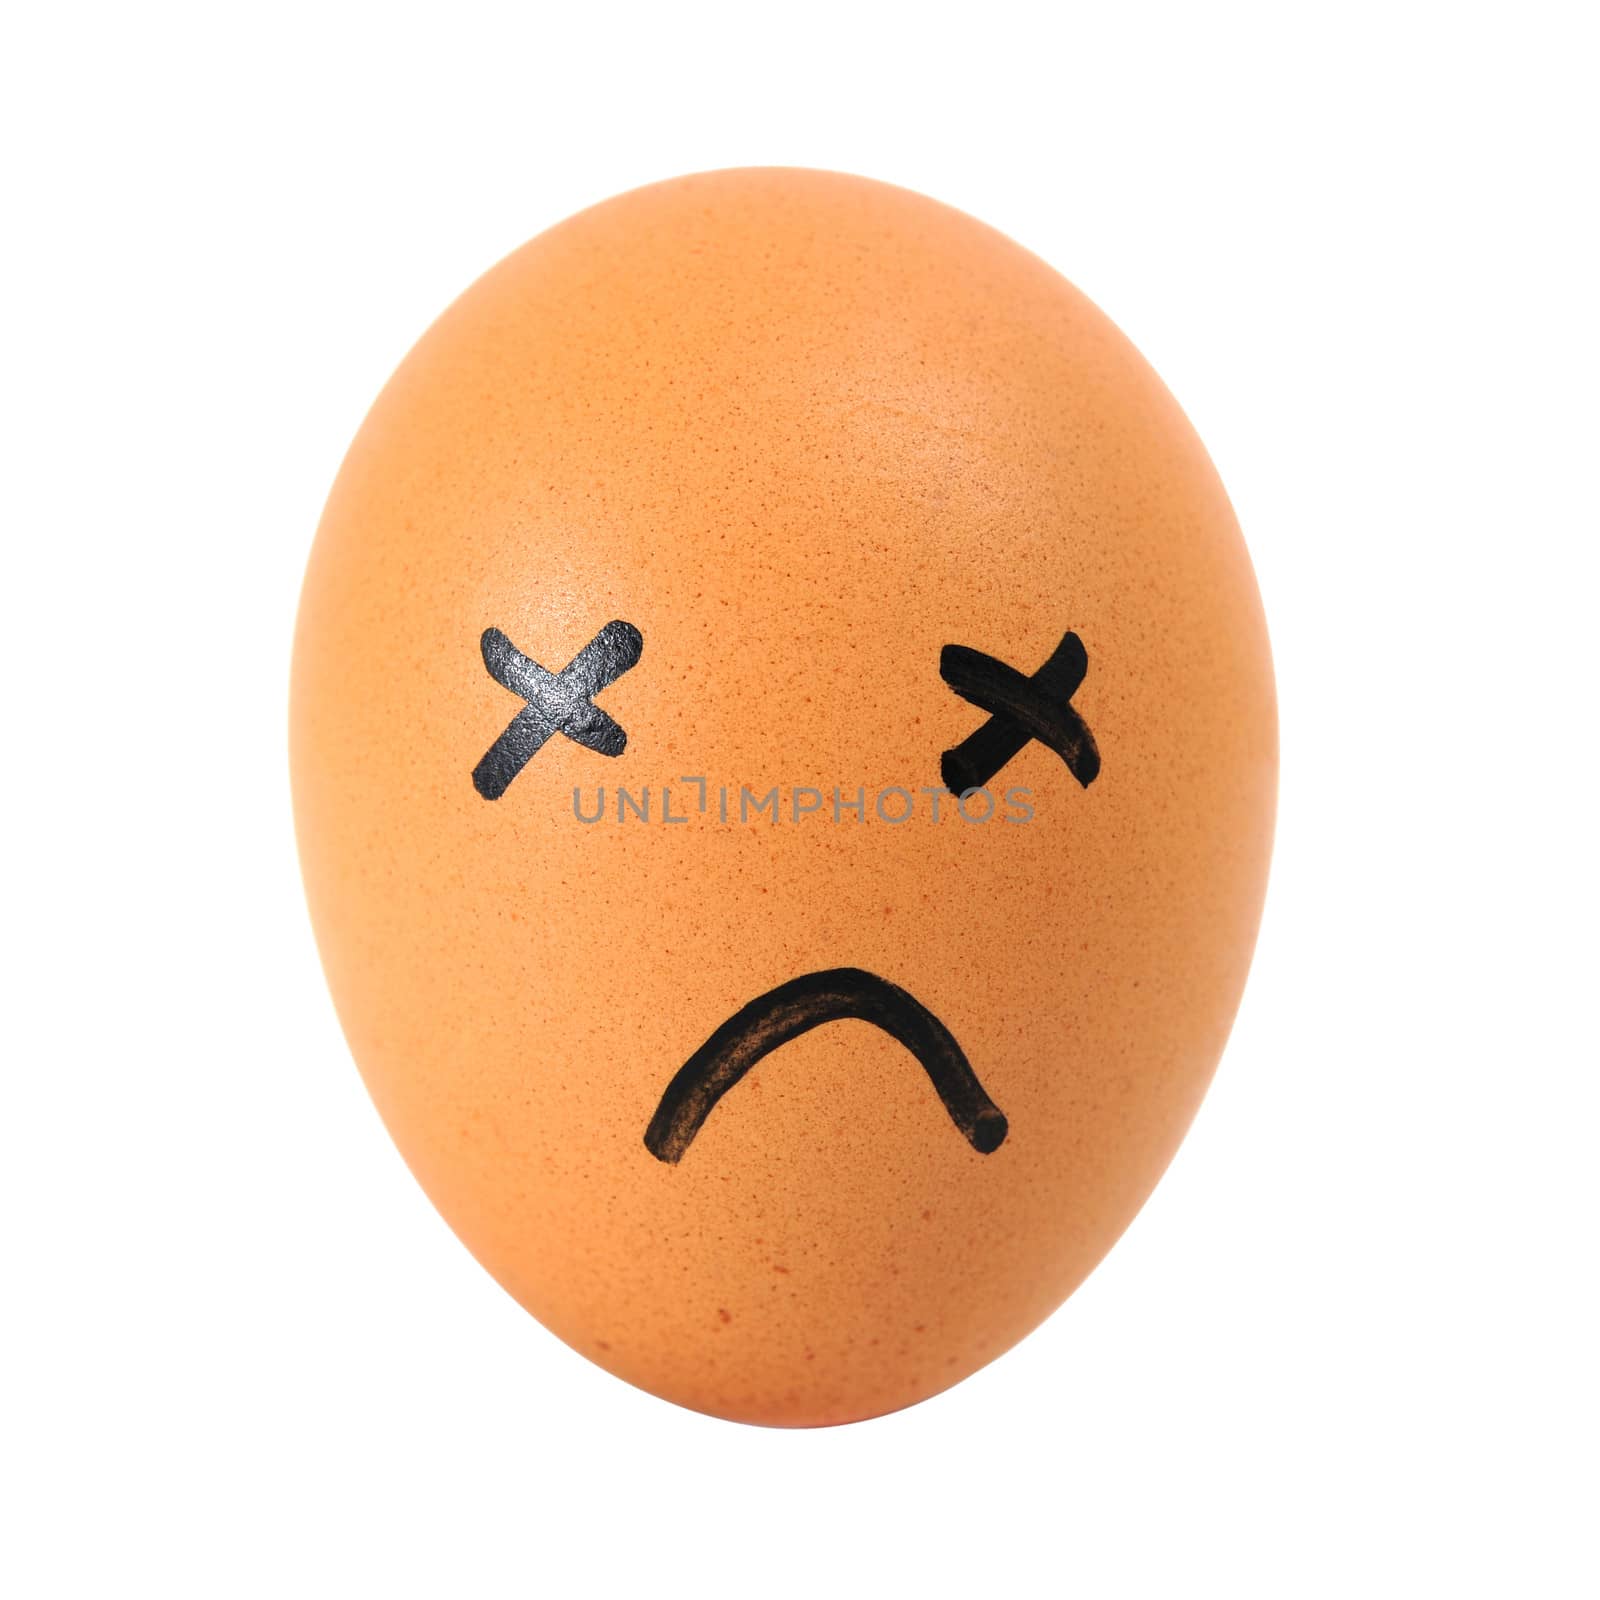 sad egg by antpkr